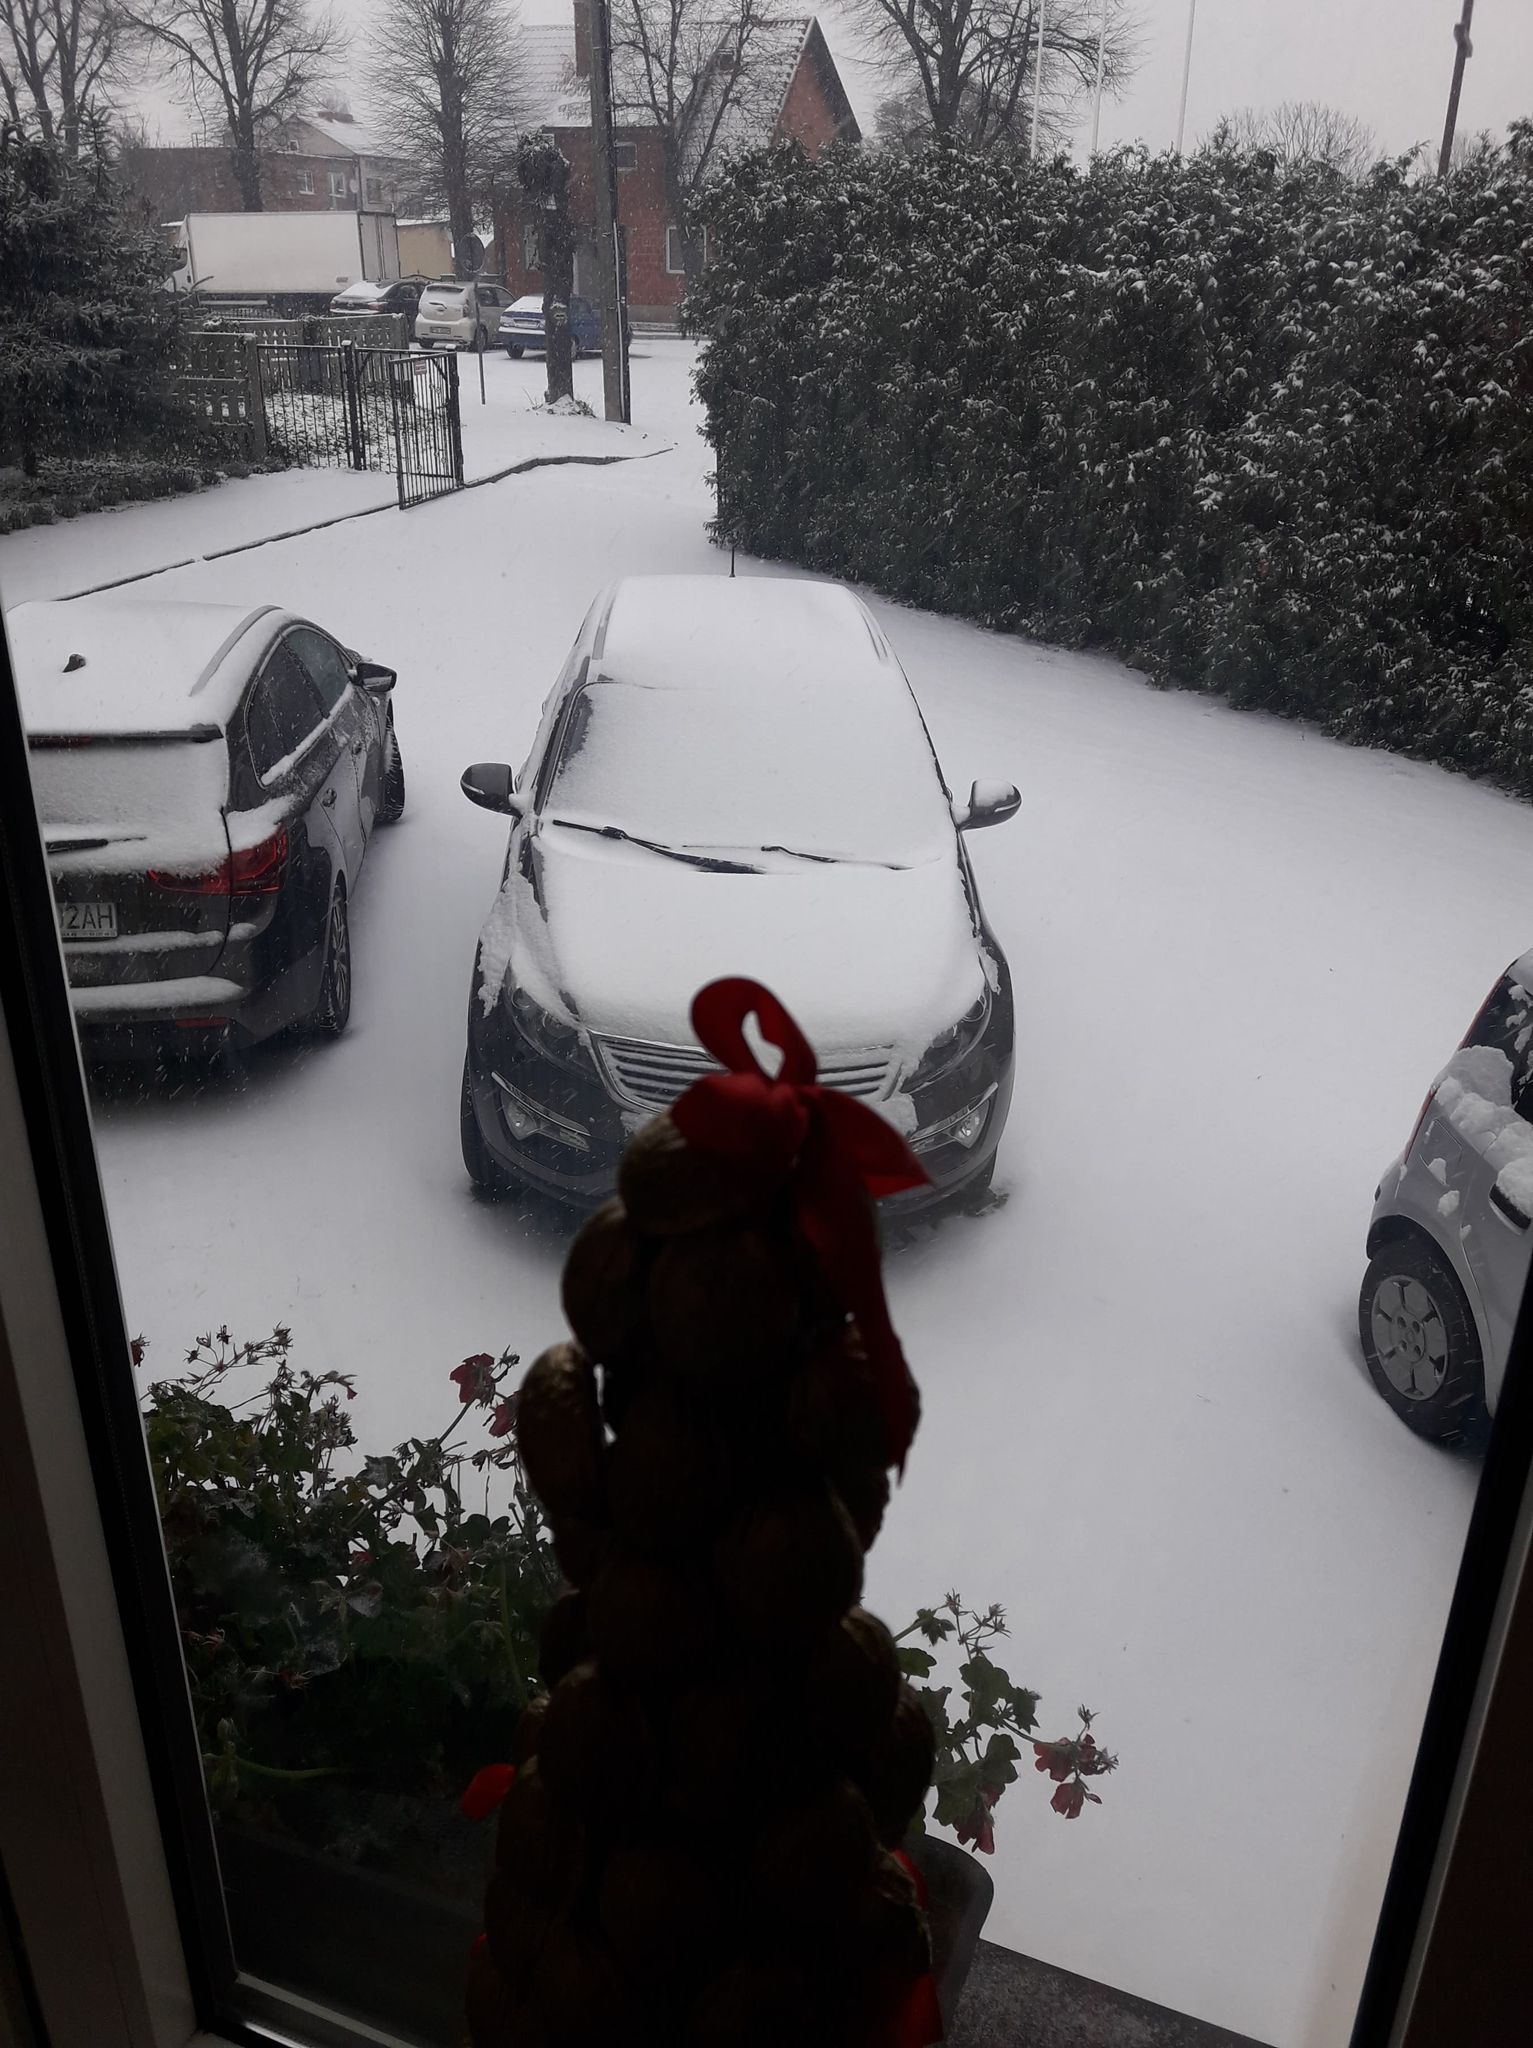 widok za oknem (auta na parkingu zasypane śniegiem)